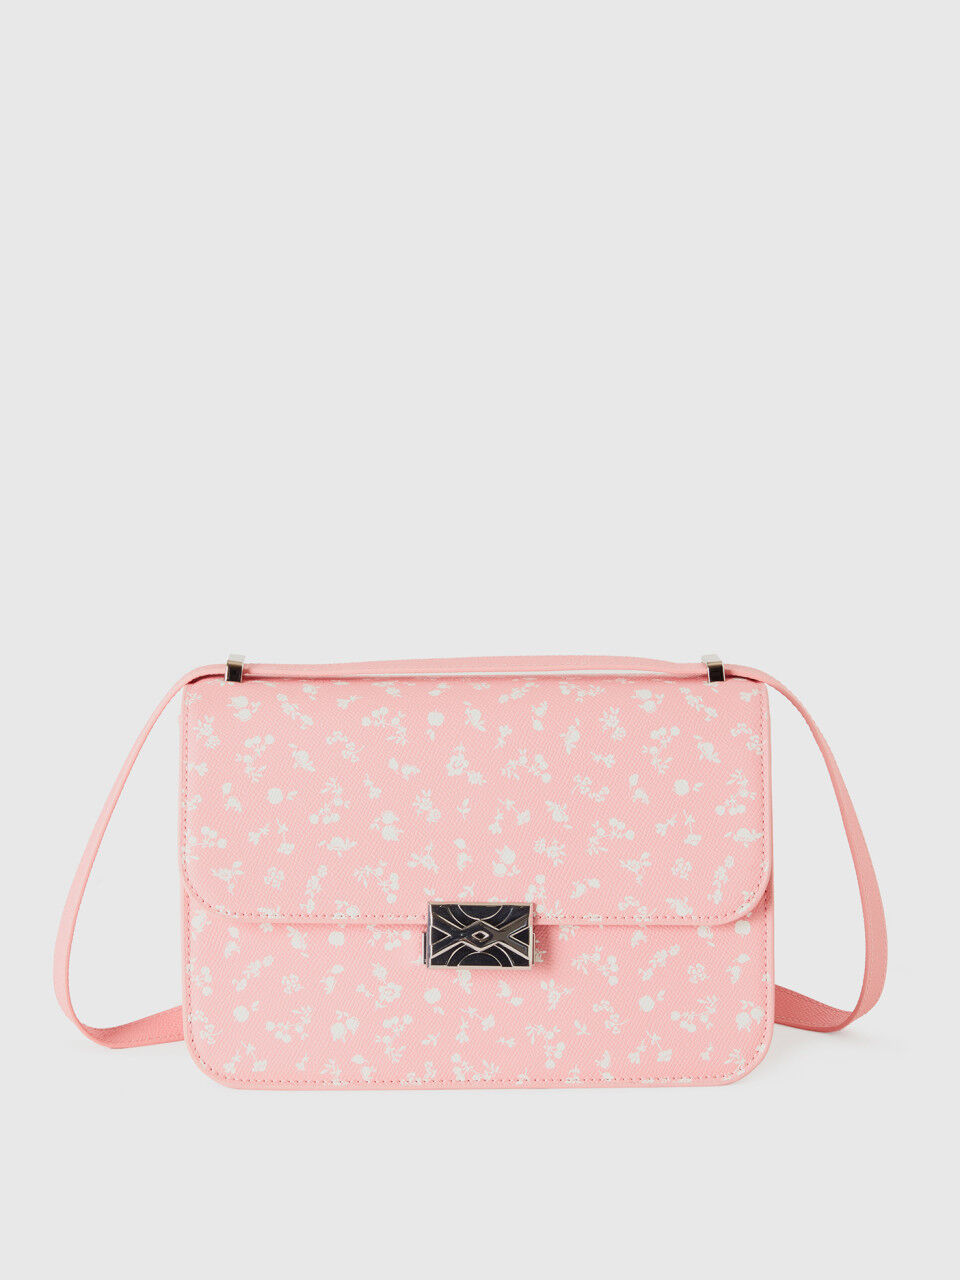 Grand sac Be Bag rose à motif floral